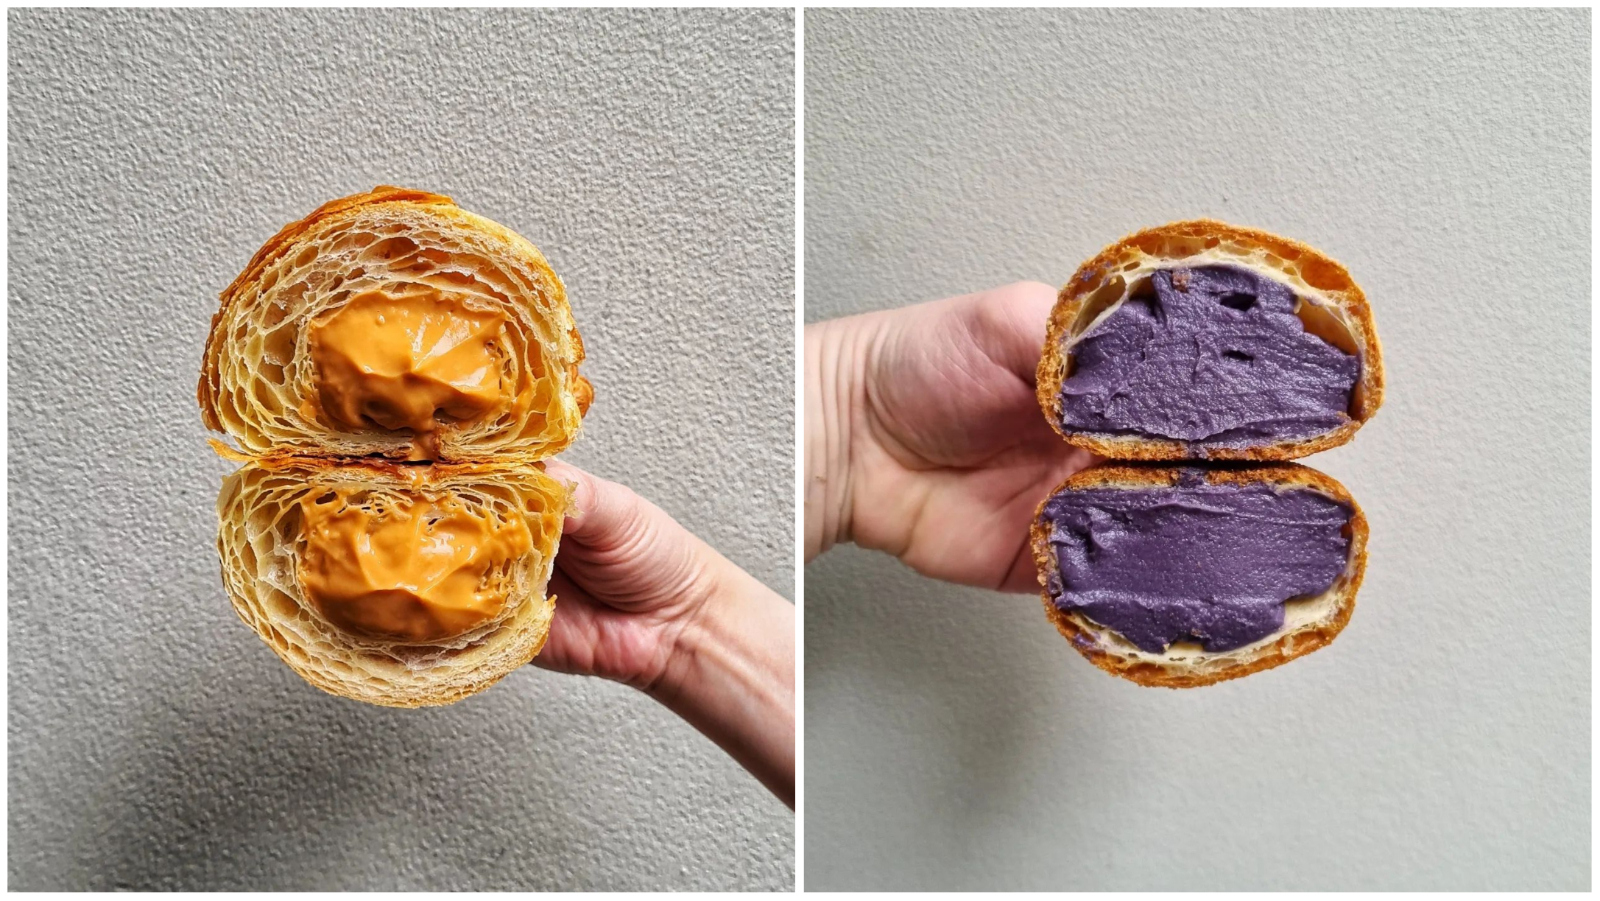 Instagram profil zanatske pekare čije fotografije ne možemo prestati da gledamo